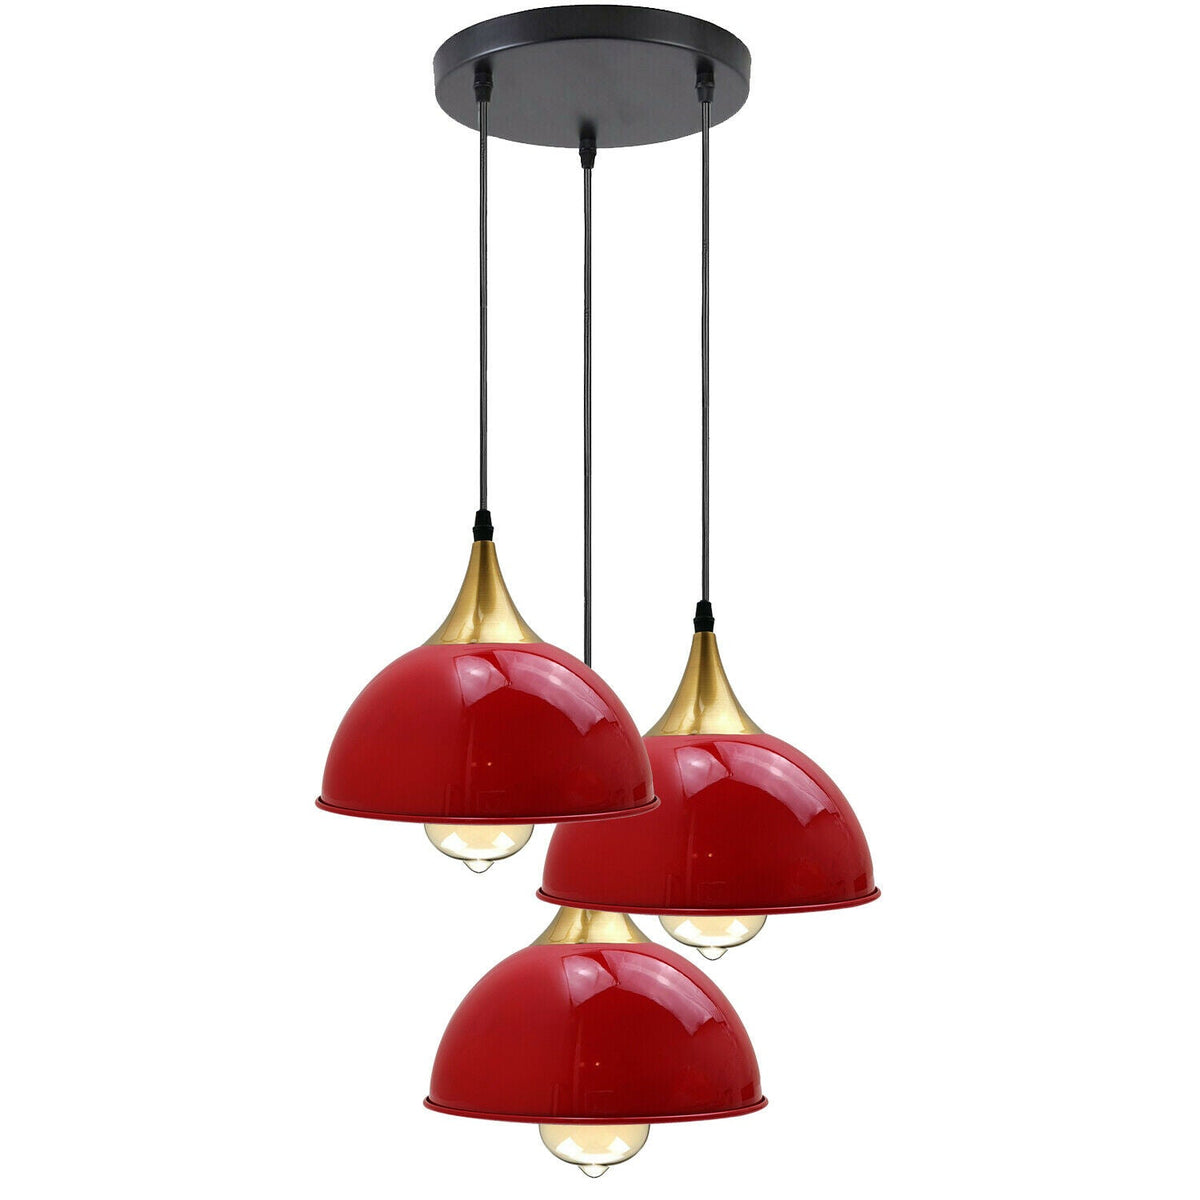 Roter 3-Wege-Vintage-Lampenschirm aus Metall, modern, hängend, Retro